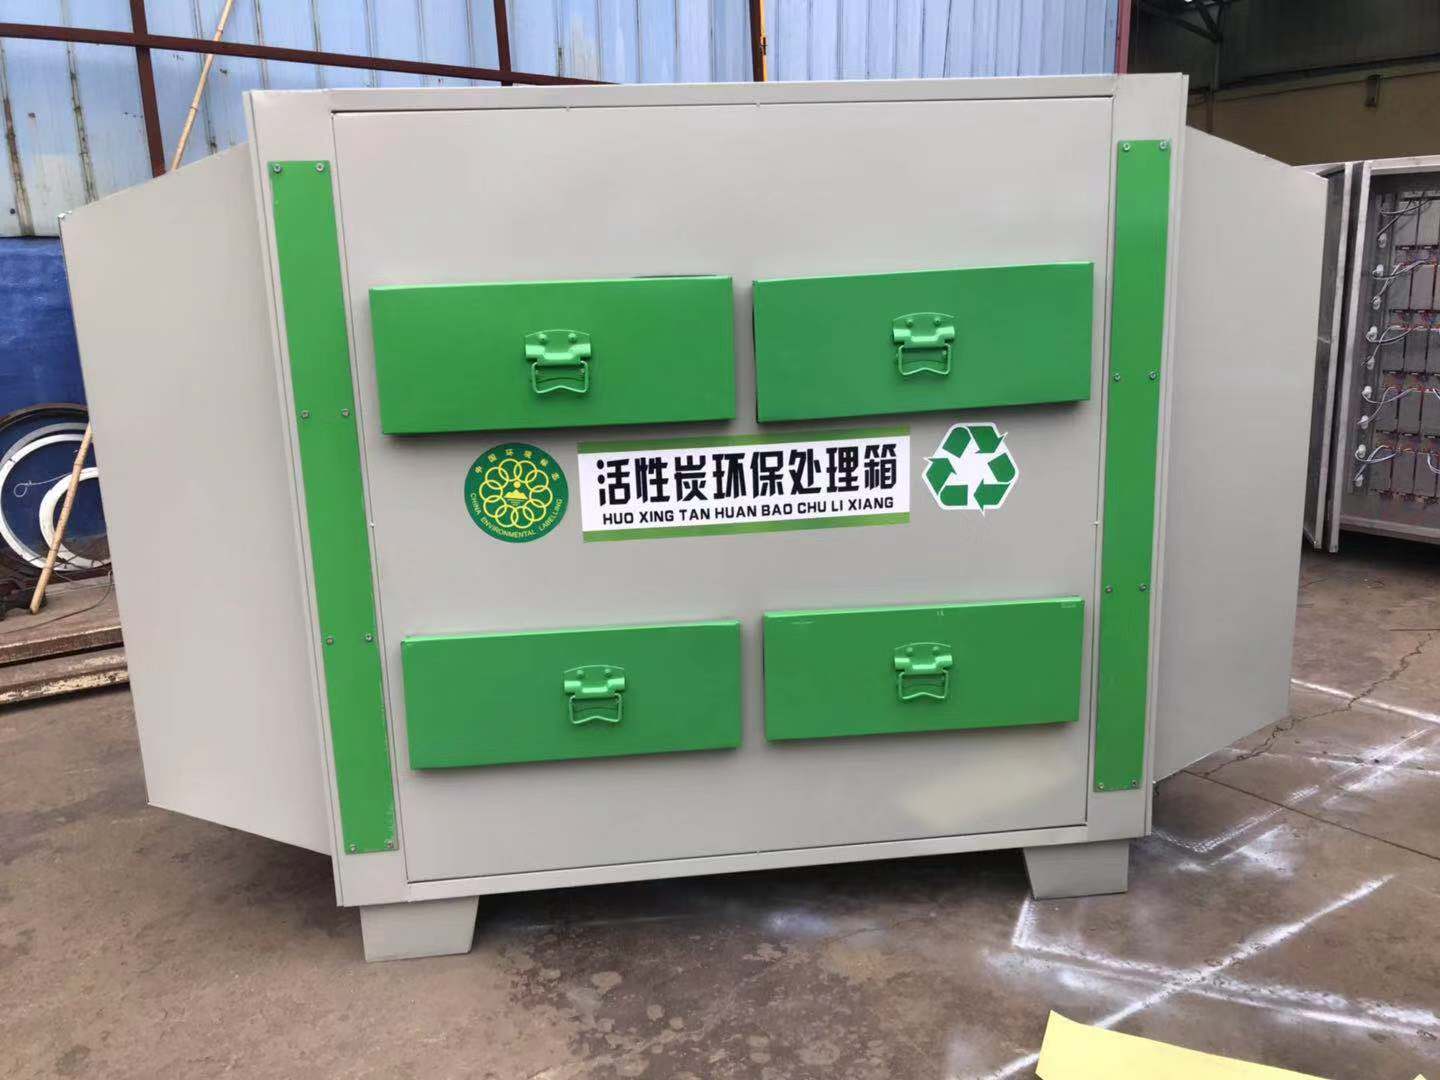 活性炭环保箱活性炭废气吸附净化环保箱来自慧硕环保18615565122